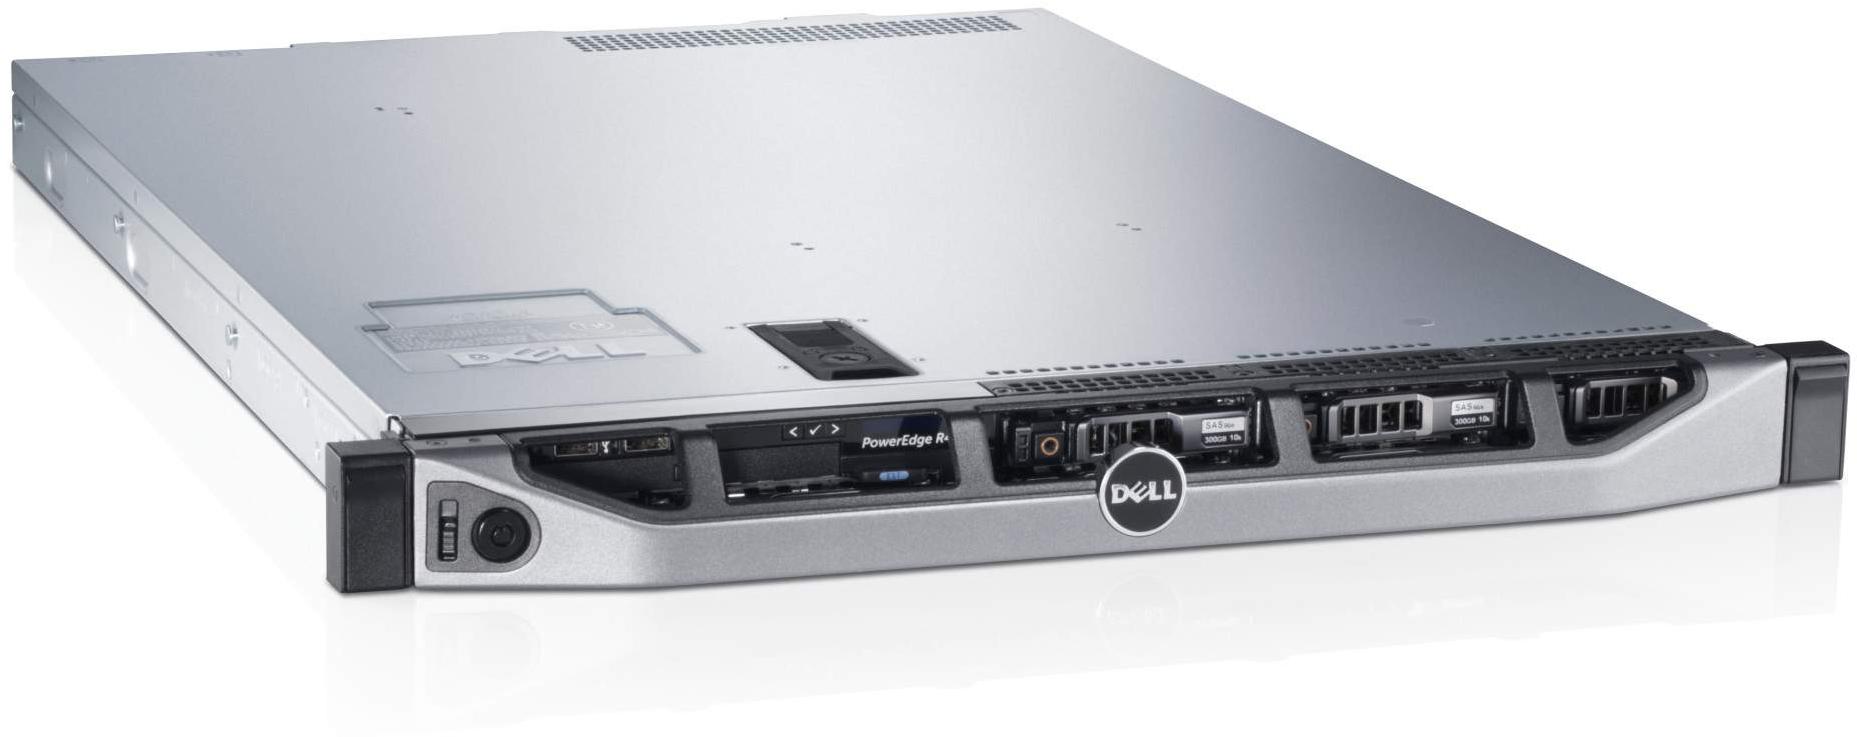     Dell PowerEdge R620 (210-39504-137)  2